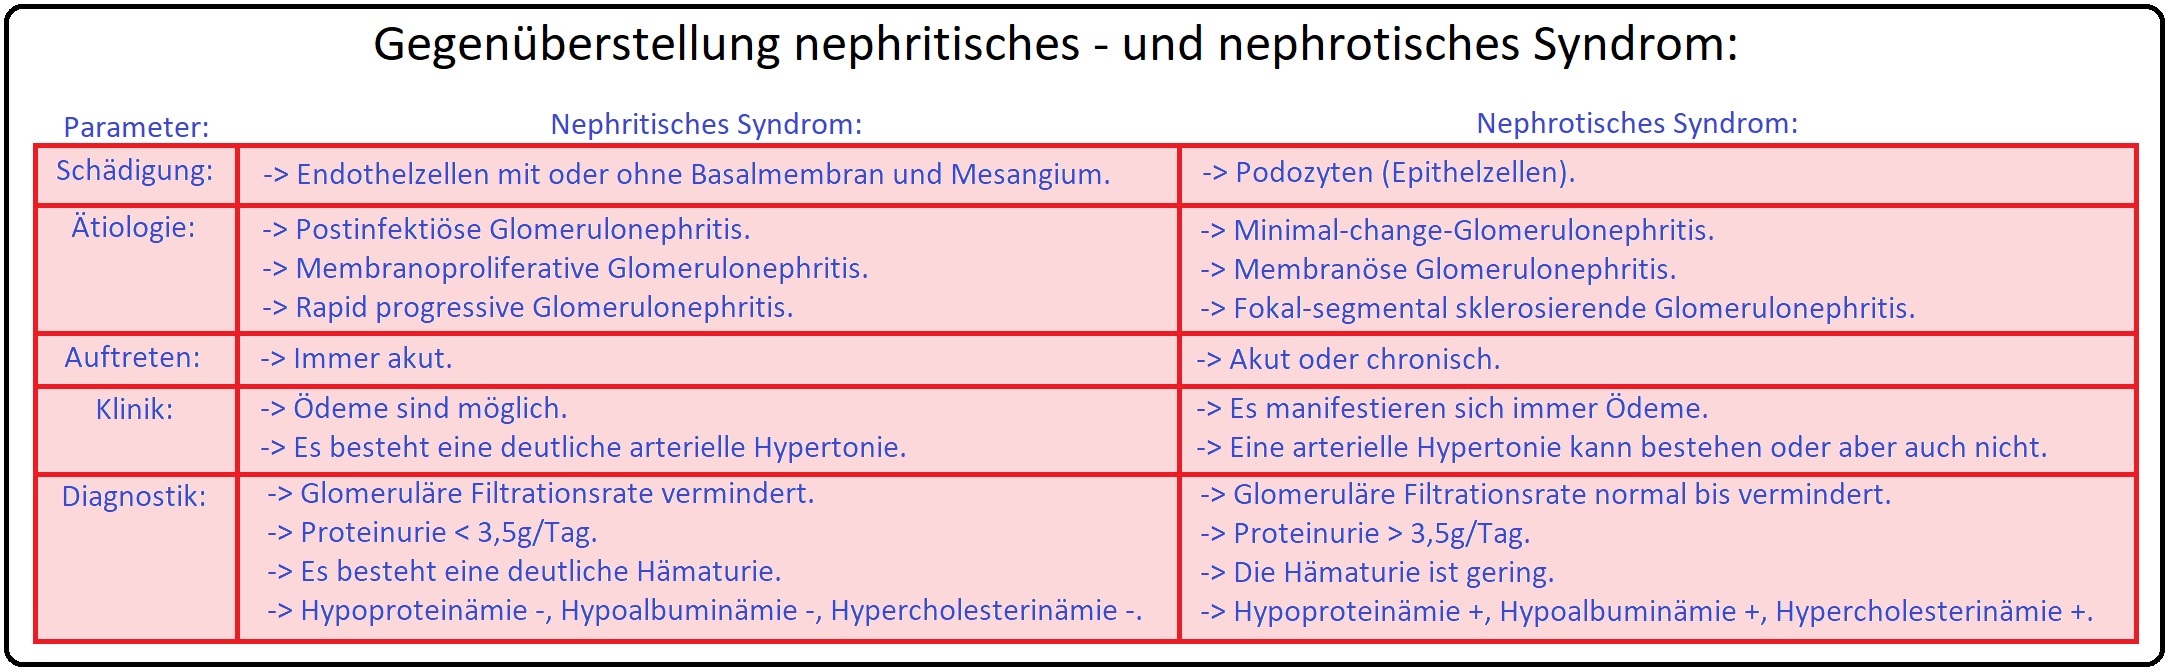 809 Gegenüberstellung nephritisches   und nephrotisches Syndrom